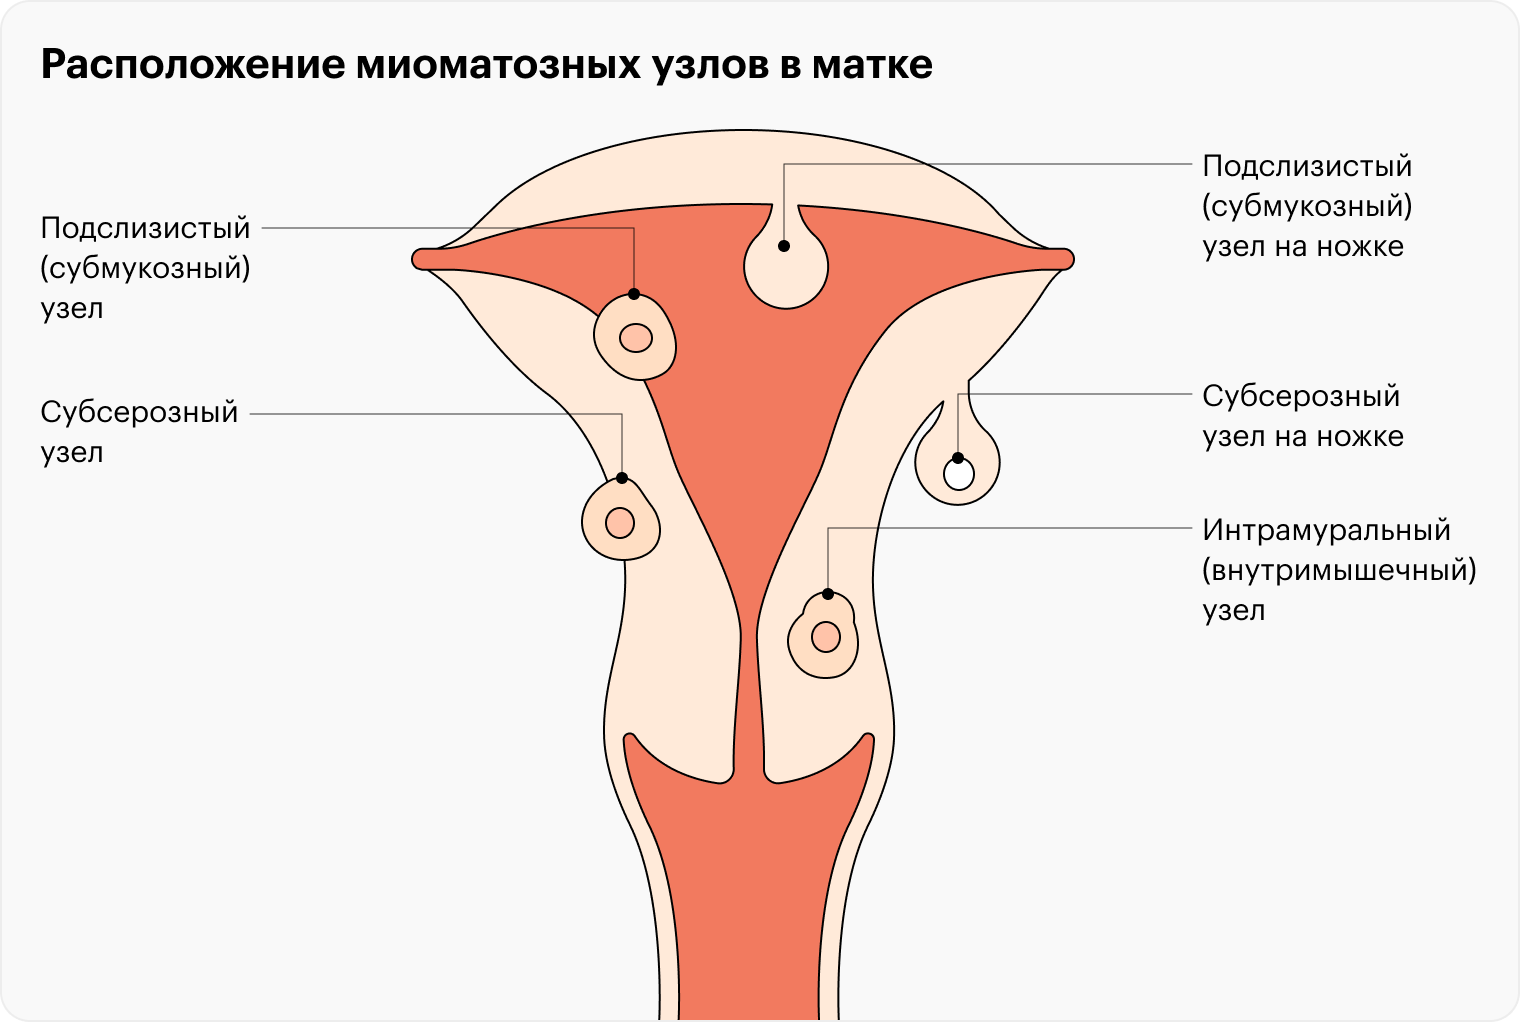 Лечение миомы матки в 21 веке — Городская Больница №40